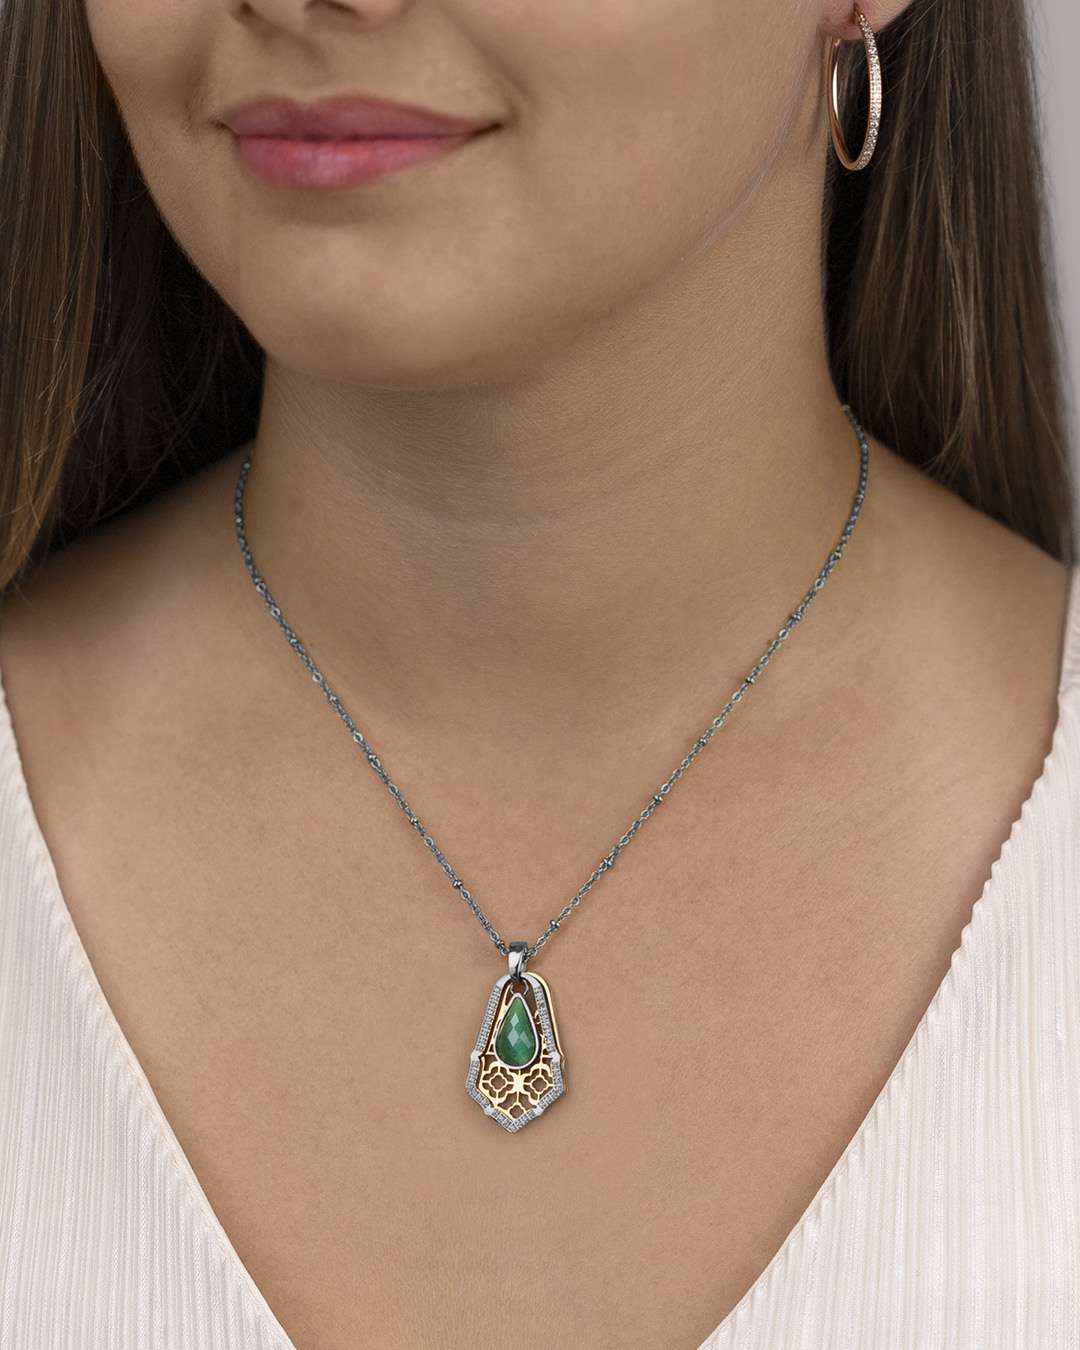 Confidence Stone Emerald Cateye Drop Pendant, Silver